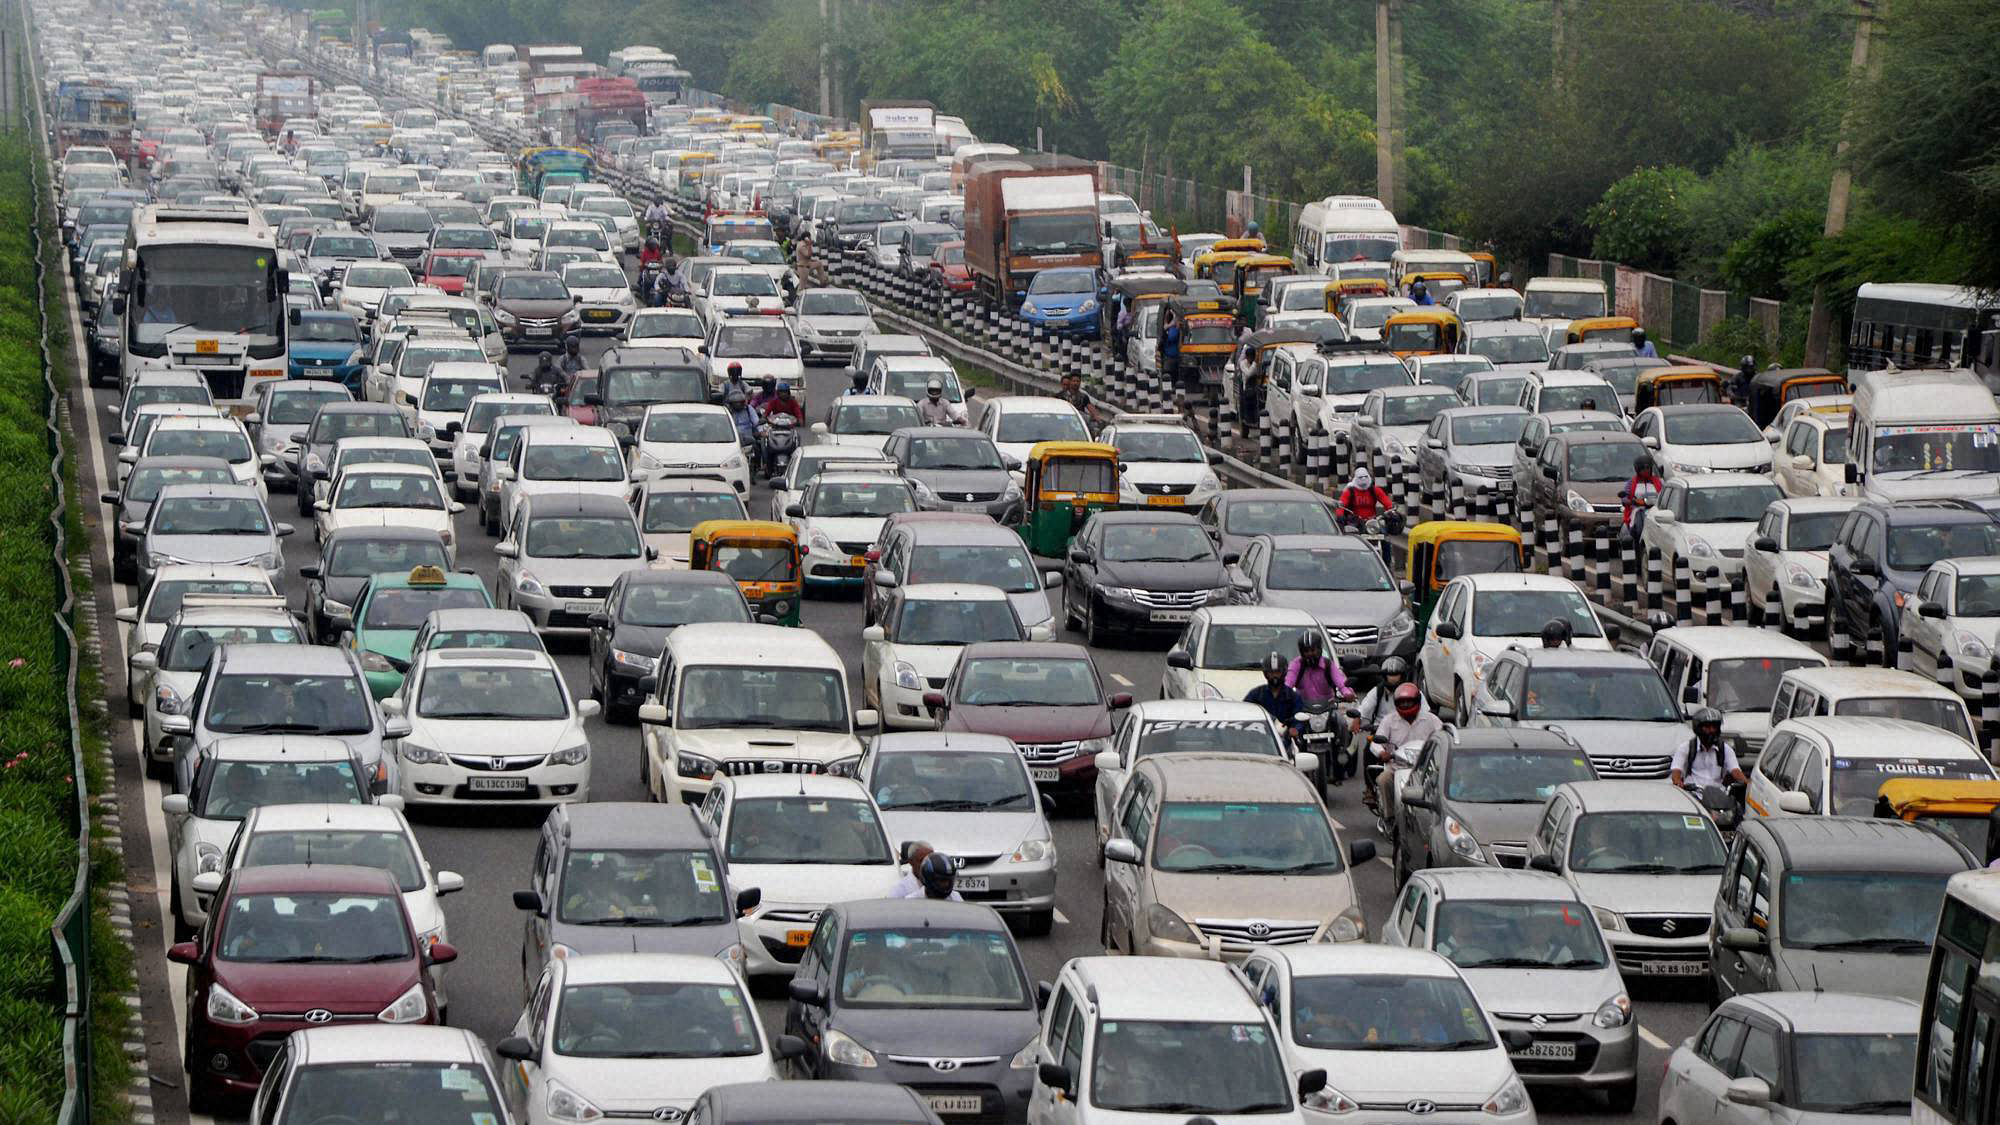 Commuters stuck in heavy traffic jam